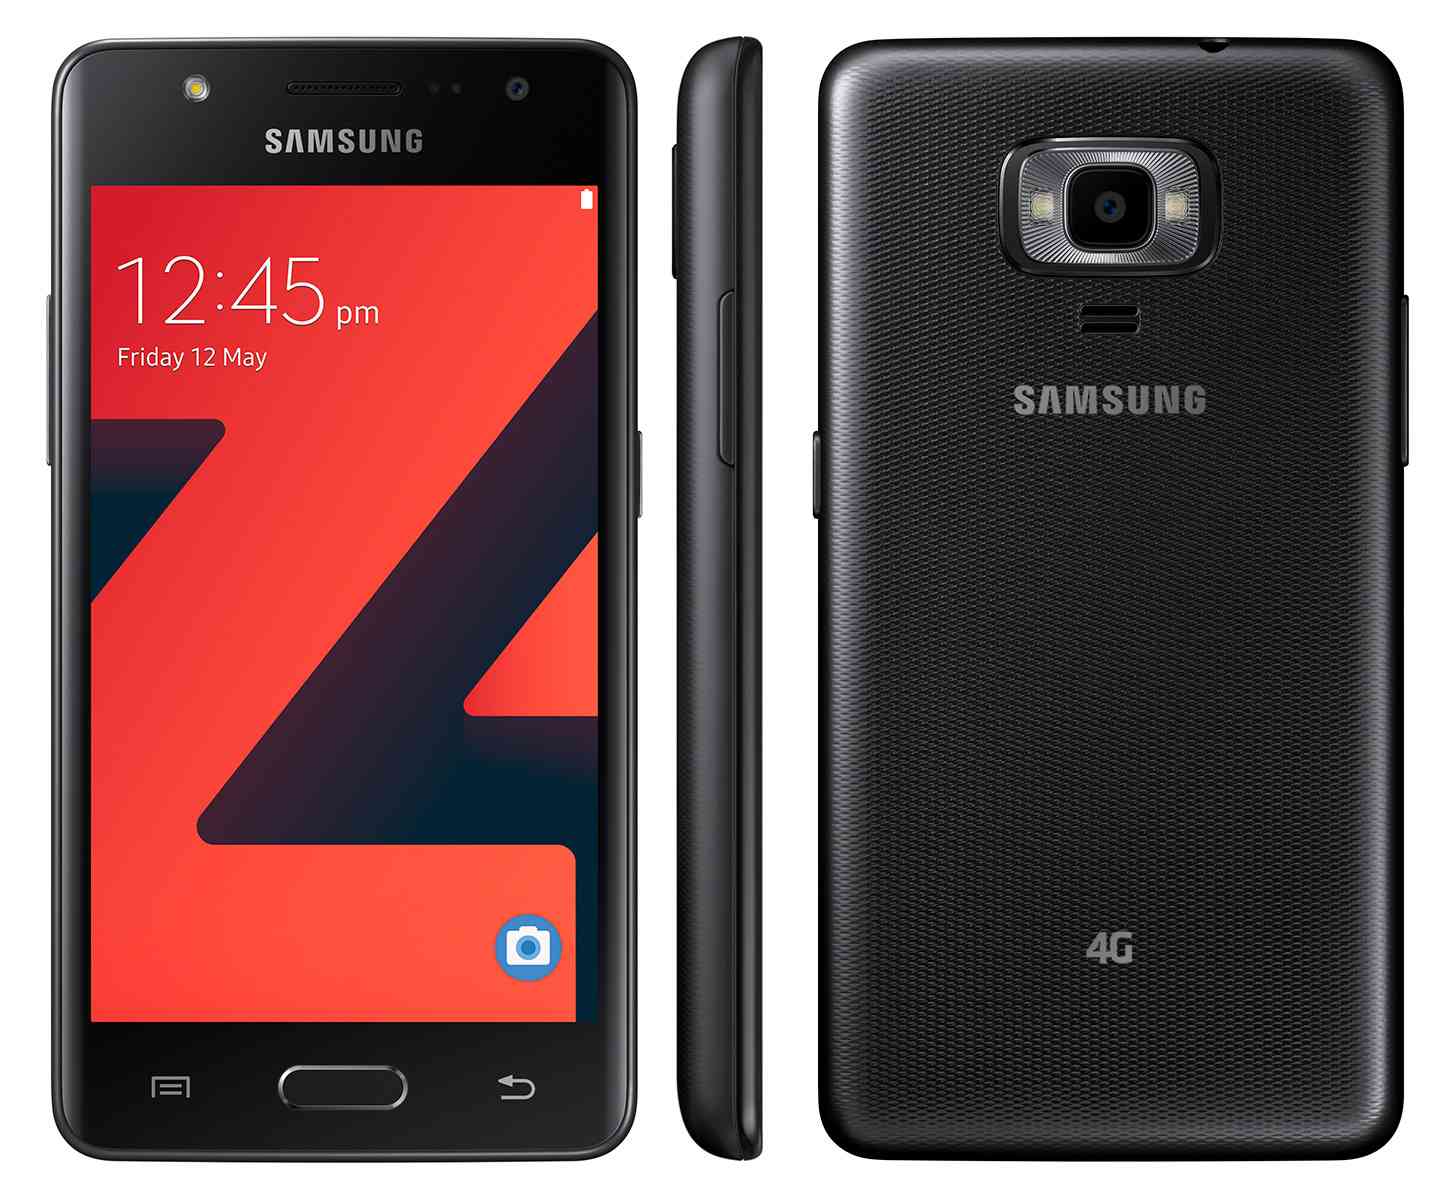 Samsung Z4 Tizen smartphone official